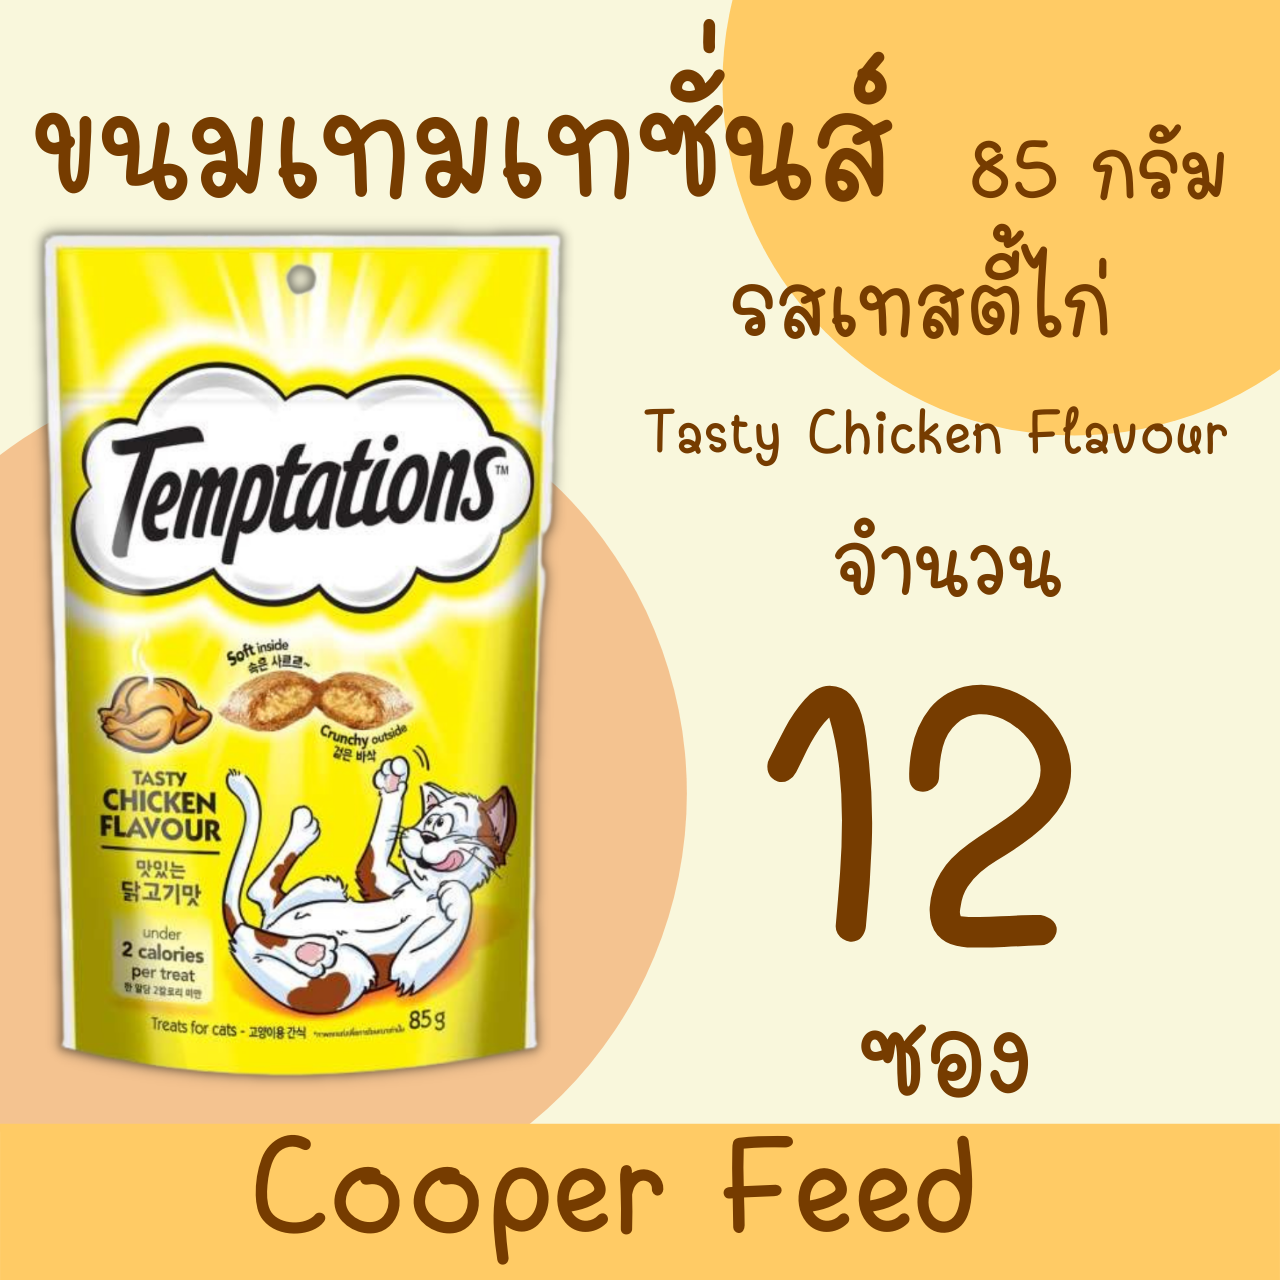 [Cooper Feed ] Whiskas Temptations  Tasty Chicken Flavour วิสกัส เทมเทชันส์ ขนมแมวสอดไส้ครีม รสเทสตี้ไก่ กรอบนอก นุ่มใน 85 g. (12ถุง)